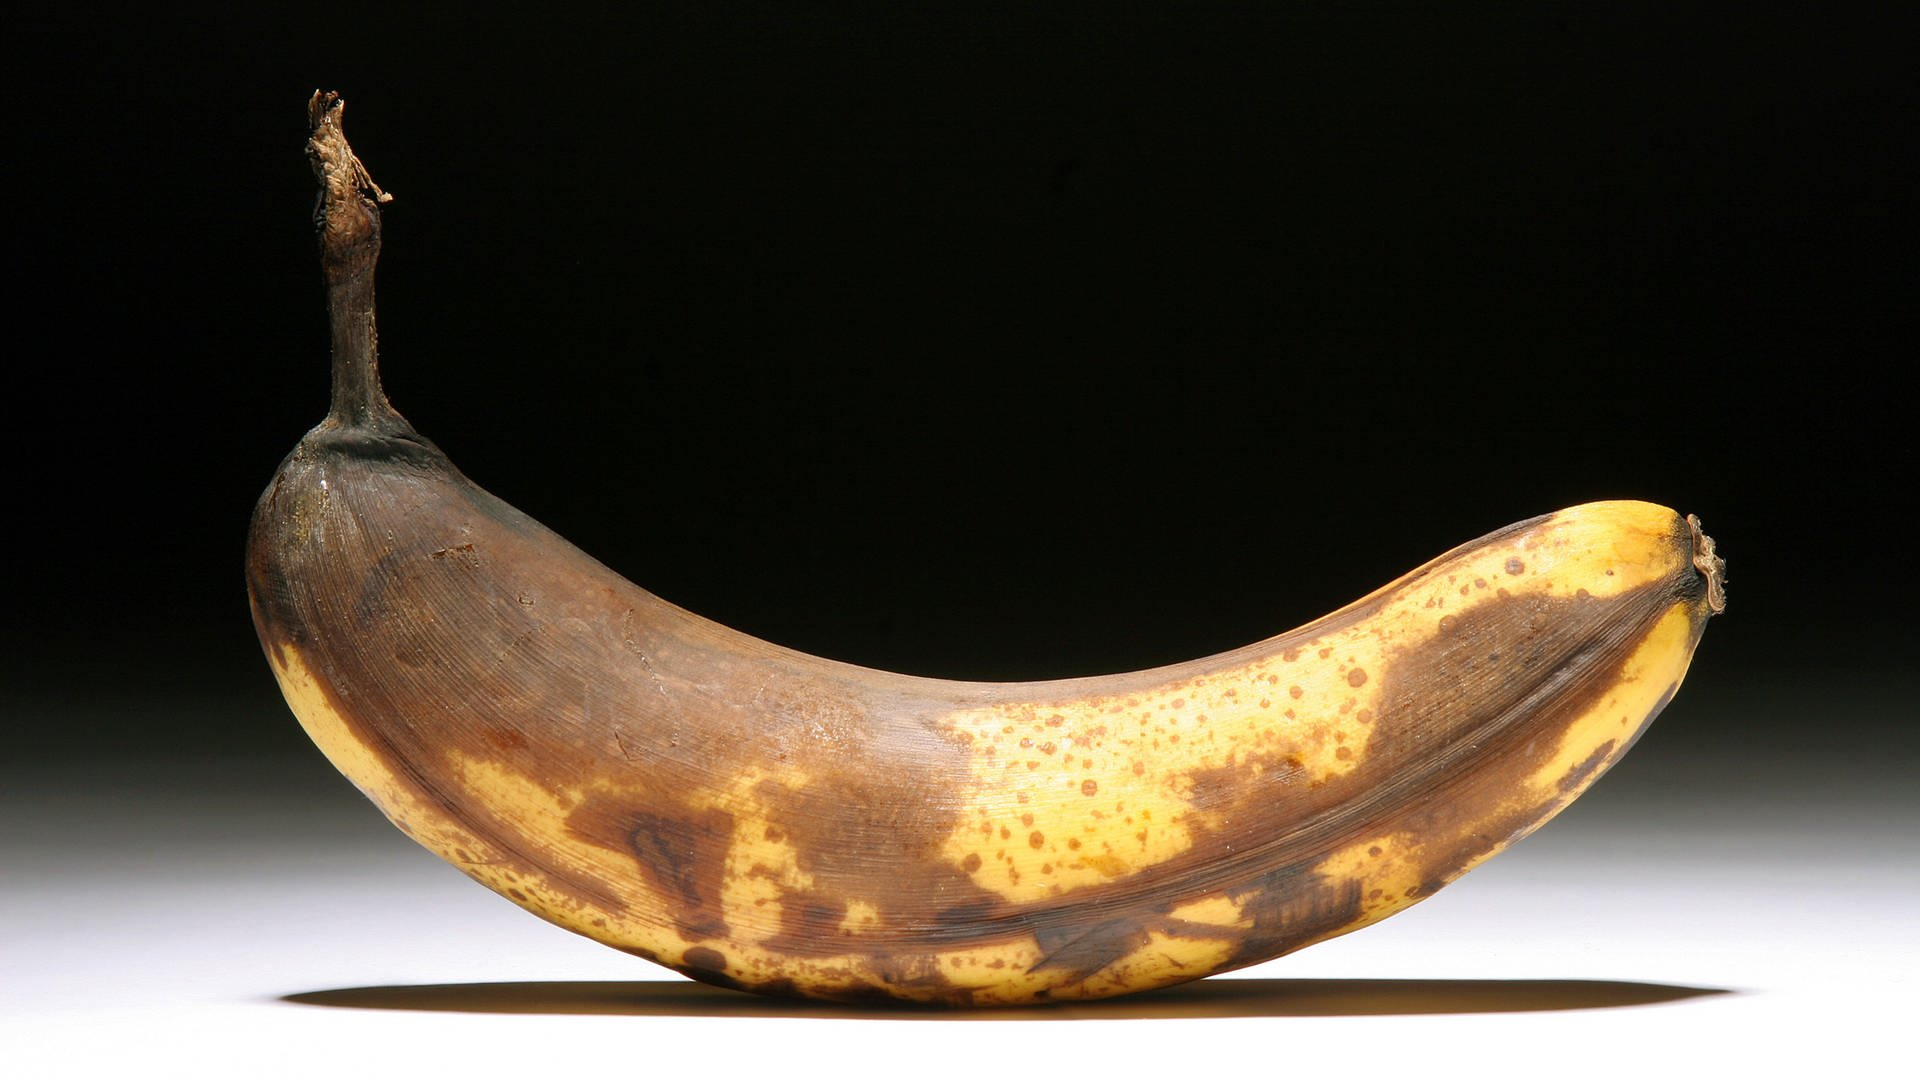 Biologie Warum Ist Die Banane Krumm? | Gesundheit | 1000 bestimmt für Warum Warum Ist Die Banane Krumm